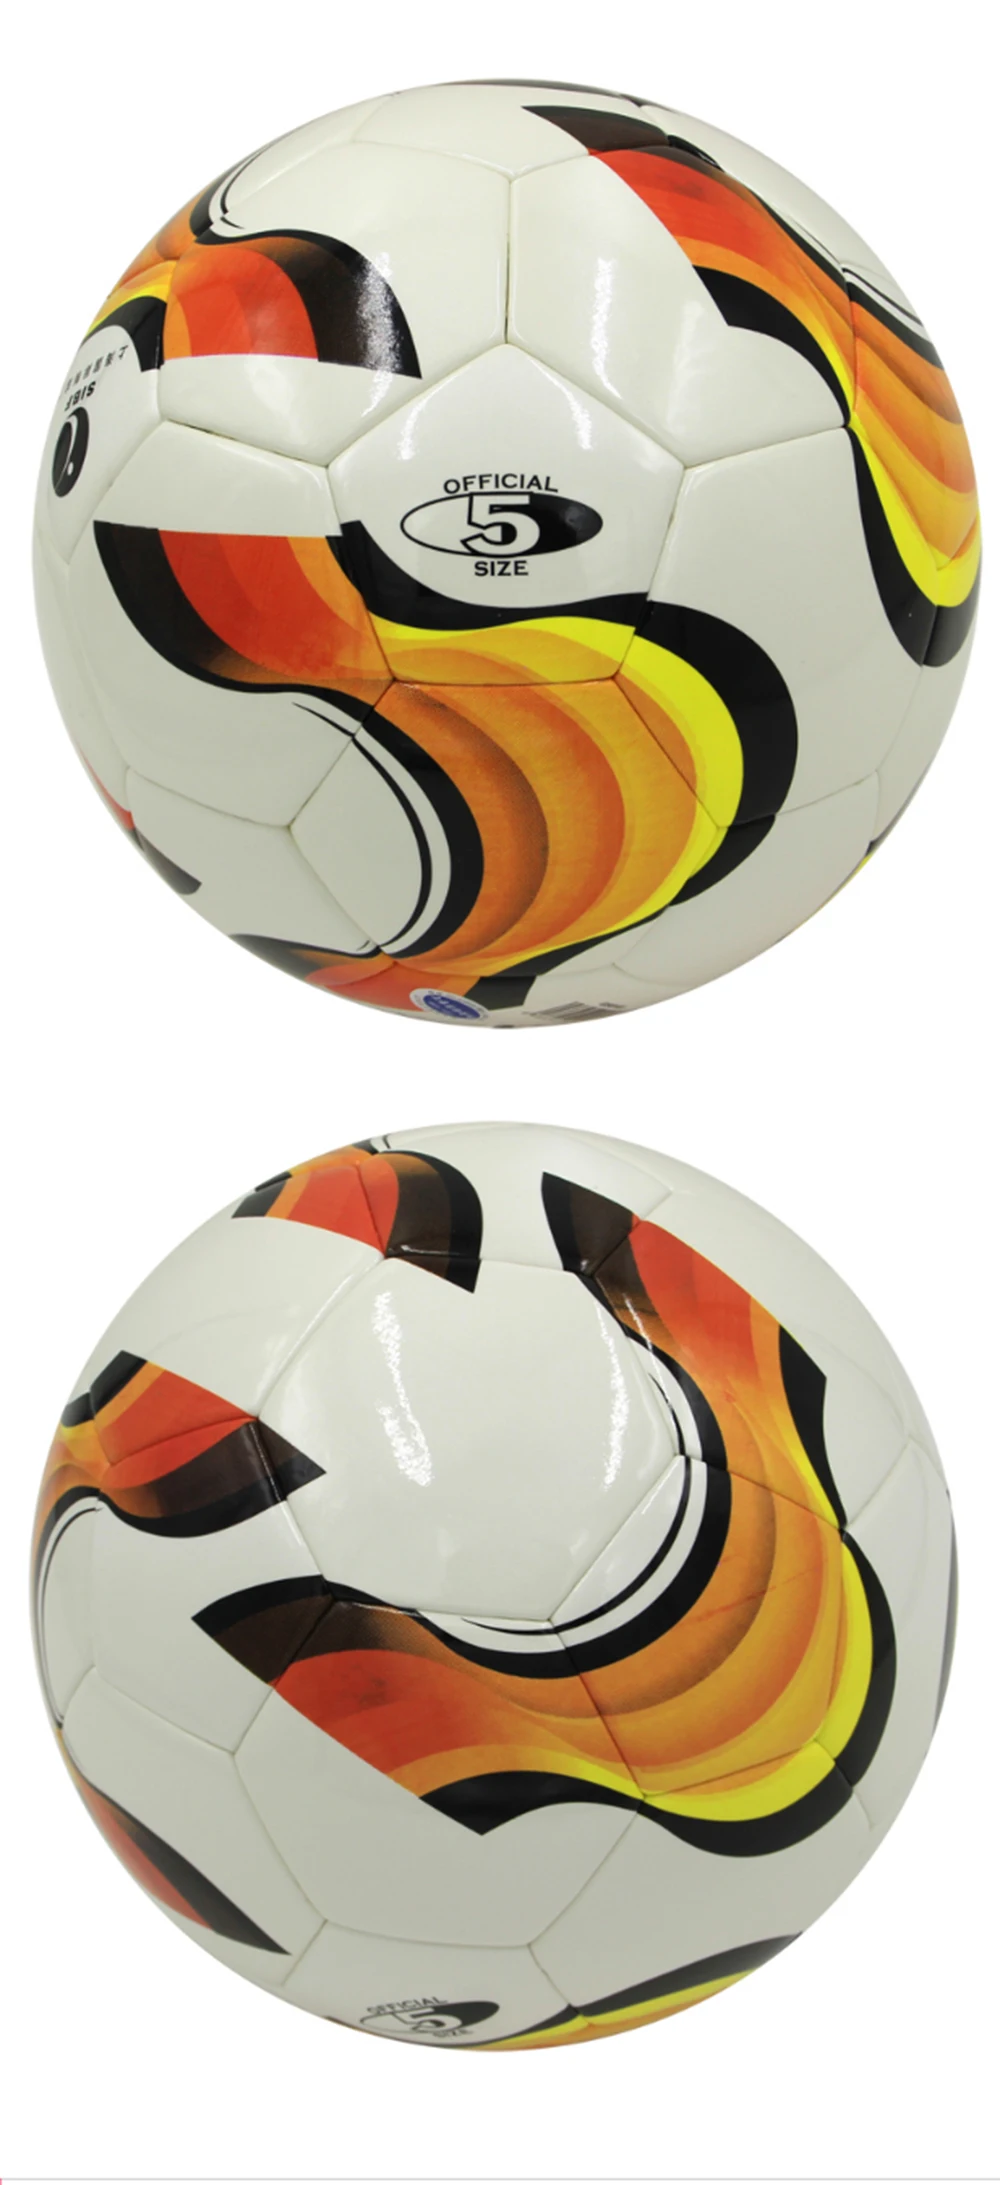 Оригинальный поезд GS8103 высокое качество Стандартный Футбольный Мяч тренировочные шары официальный размер 5 футбольный мяч